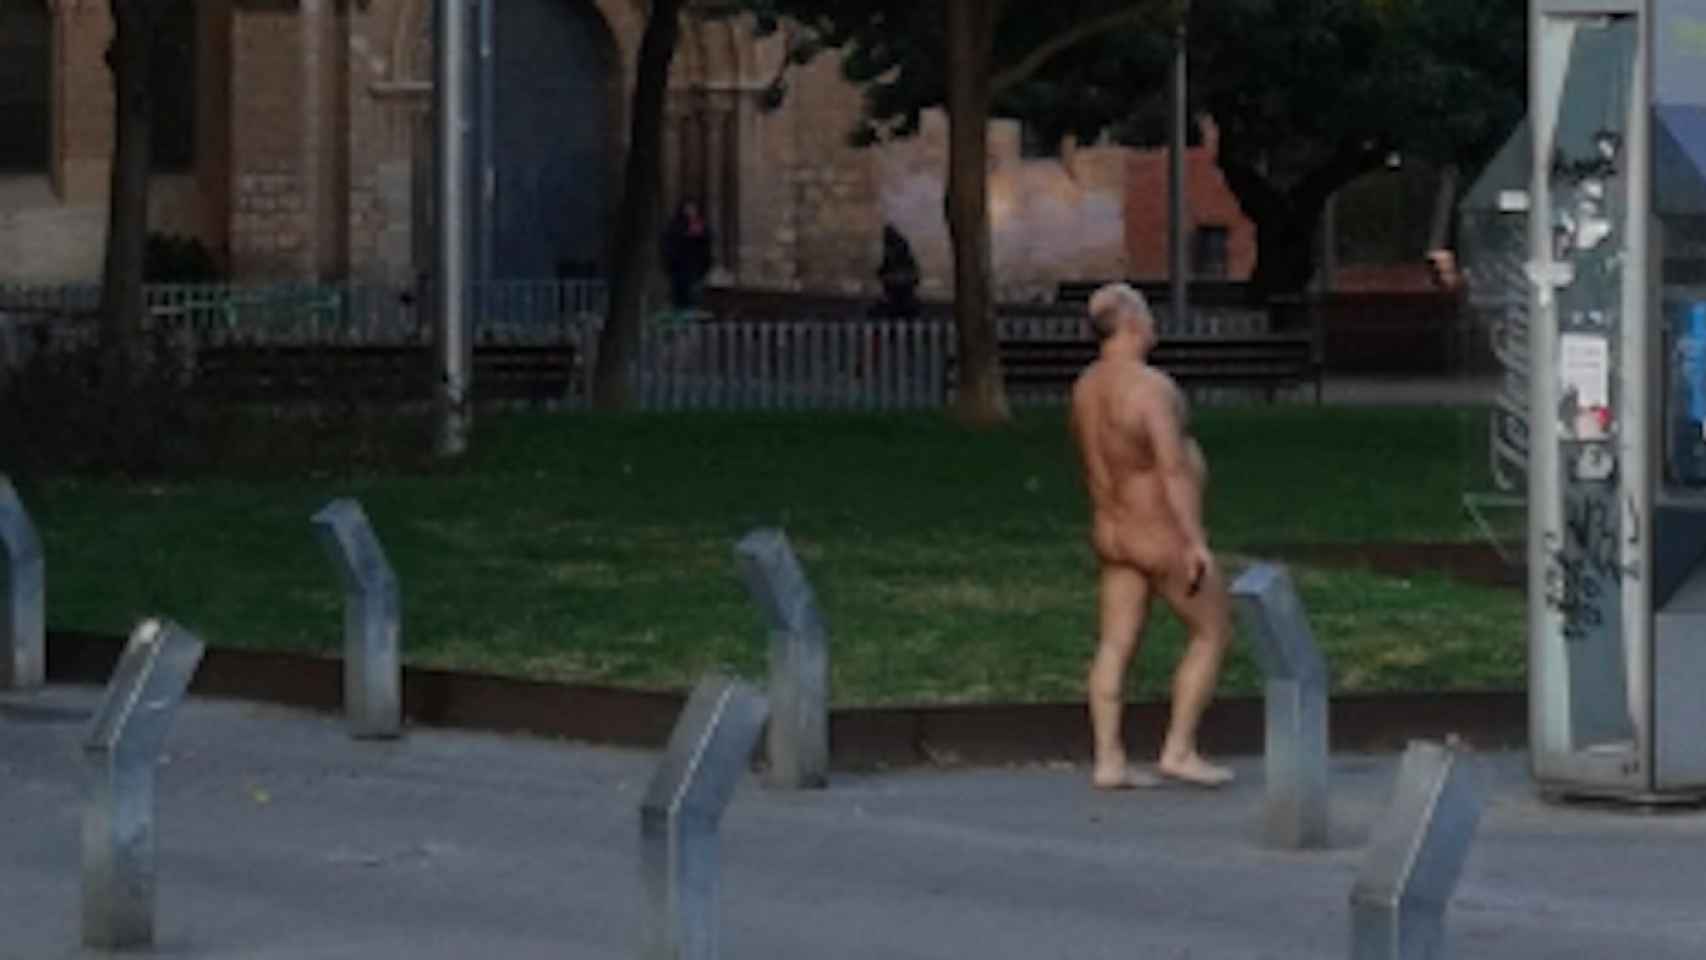 Una imagen del hombre que se ha paseado desnudo por La Sagrera / TWITTER @miniautobusero